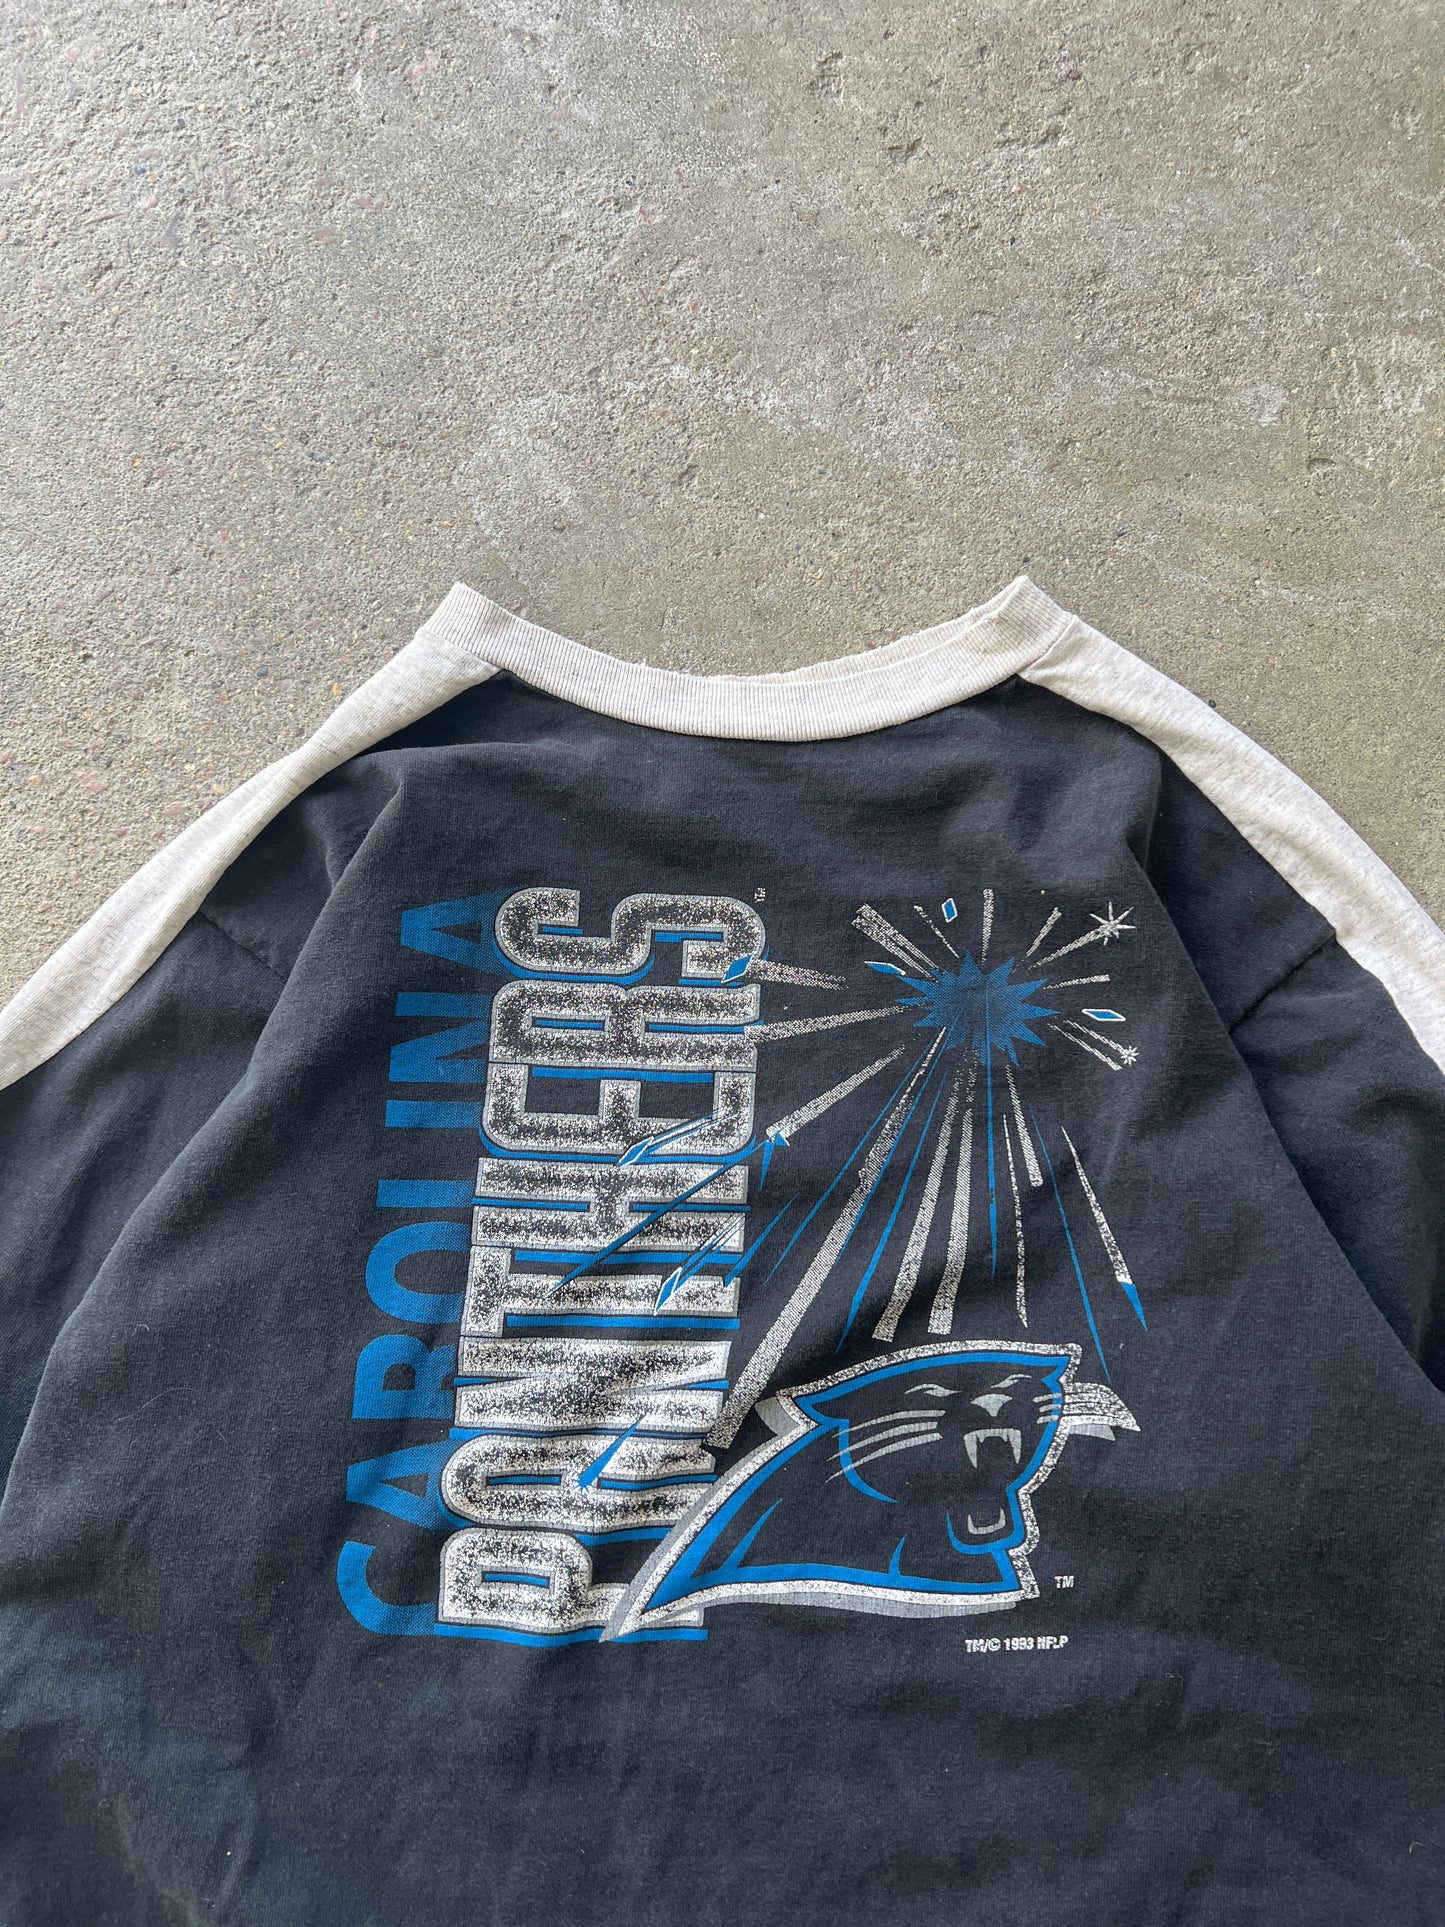 Vintage Carolina Panthers Shirt - L